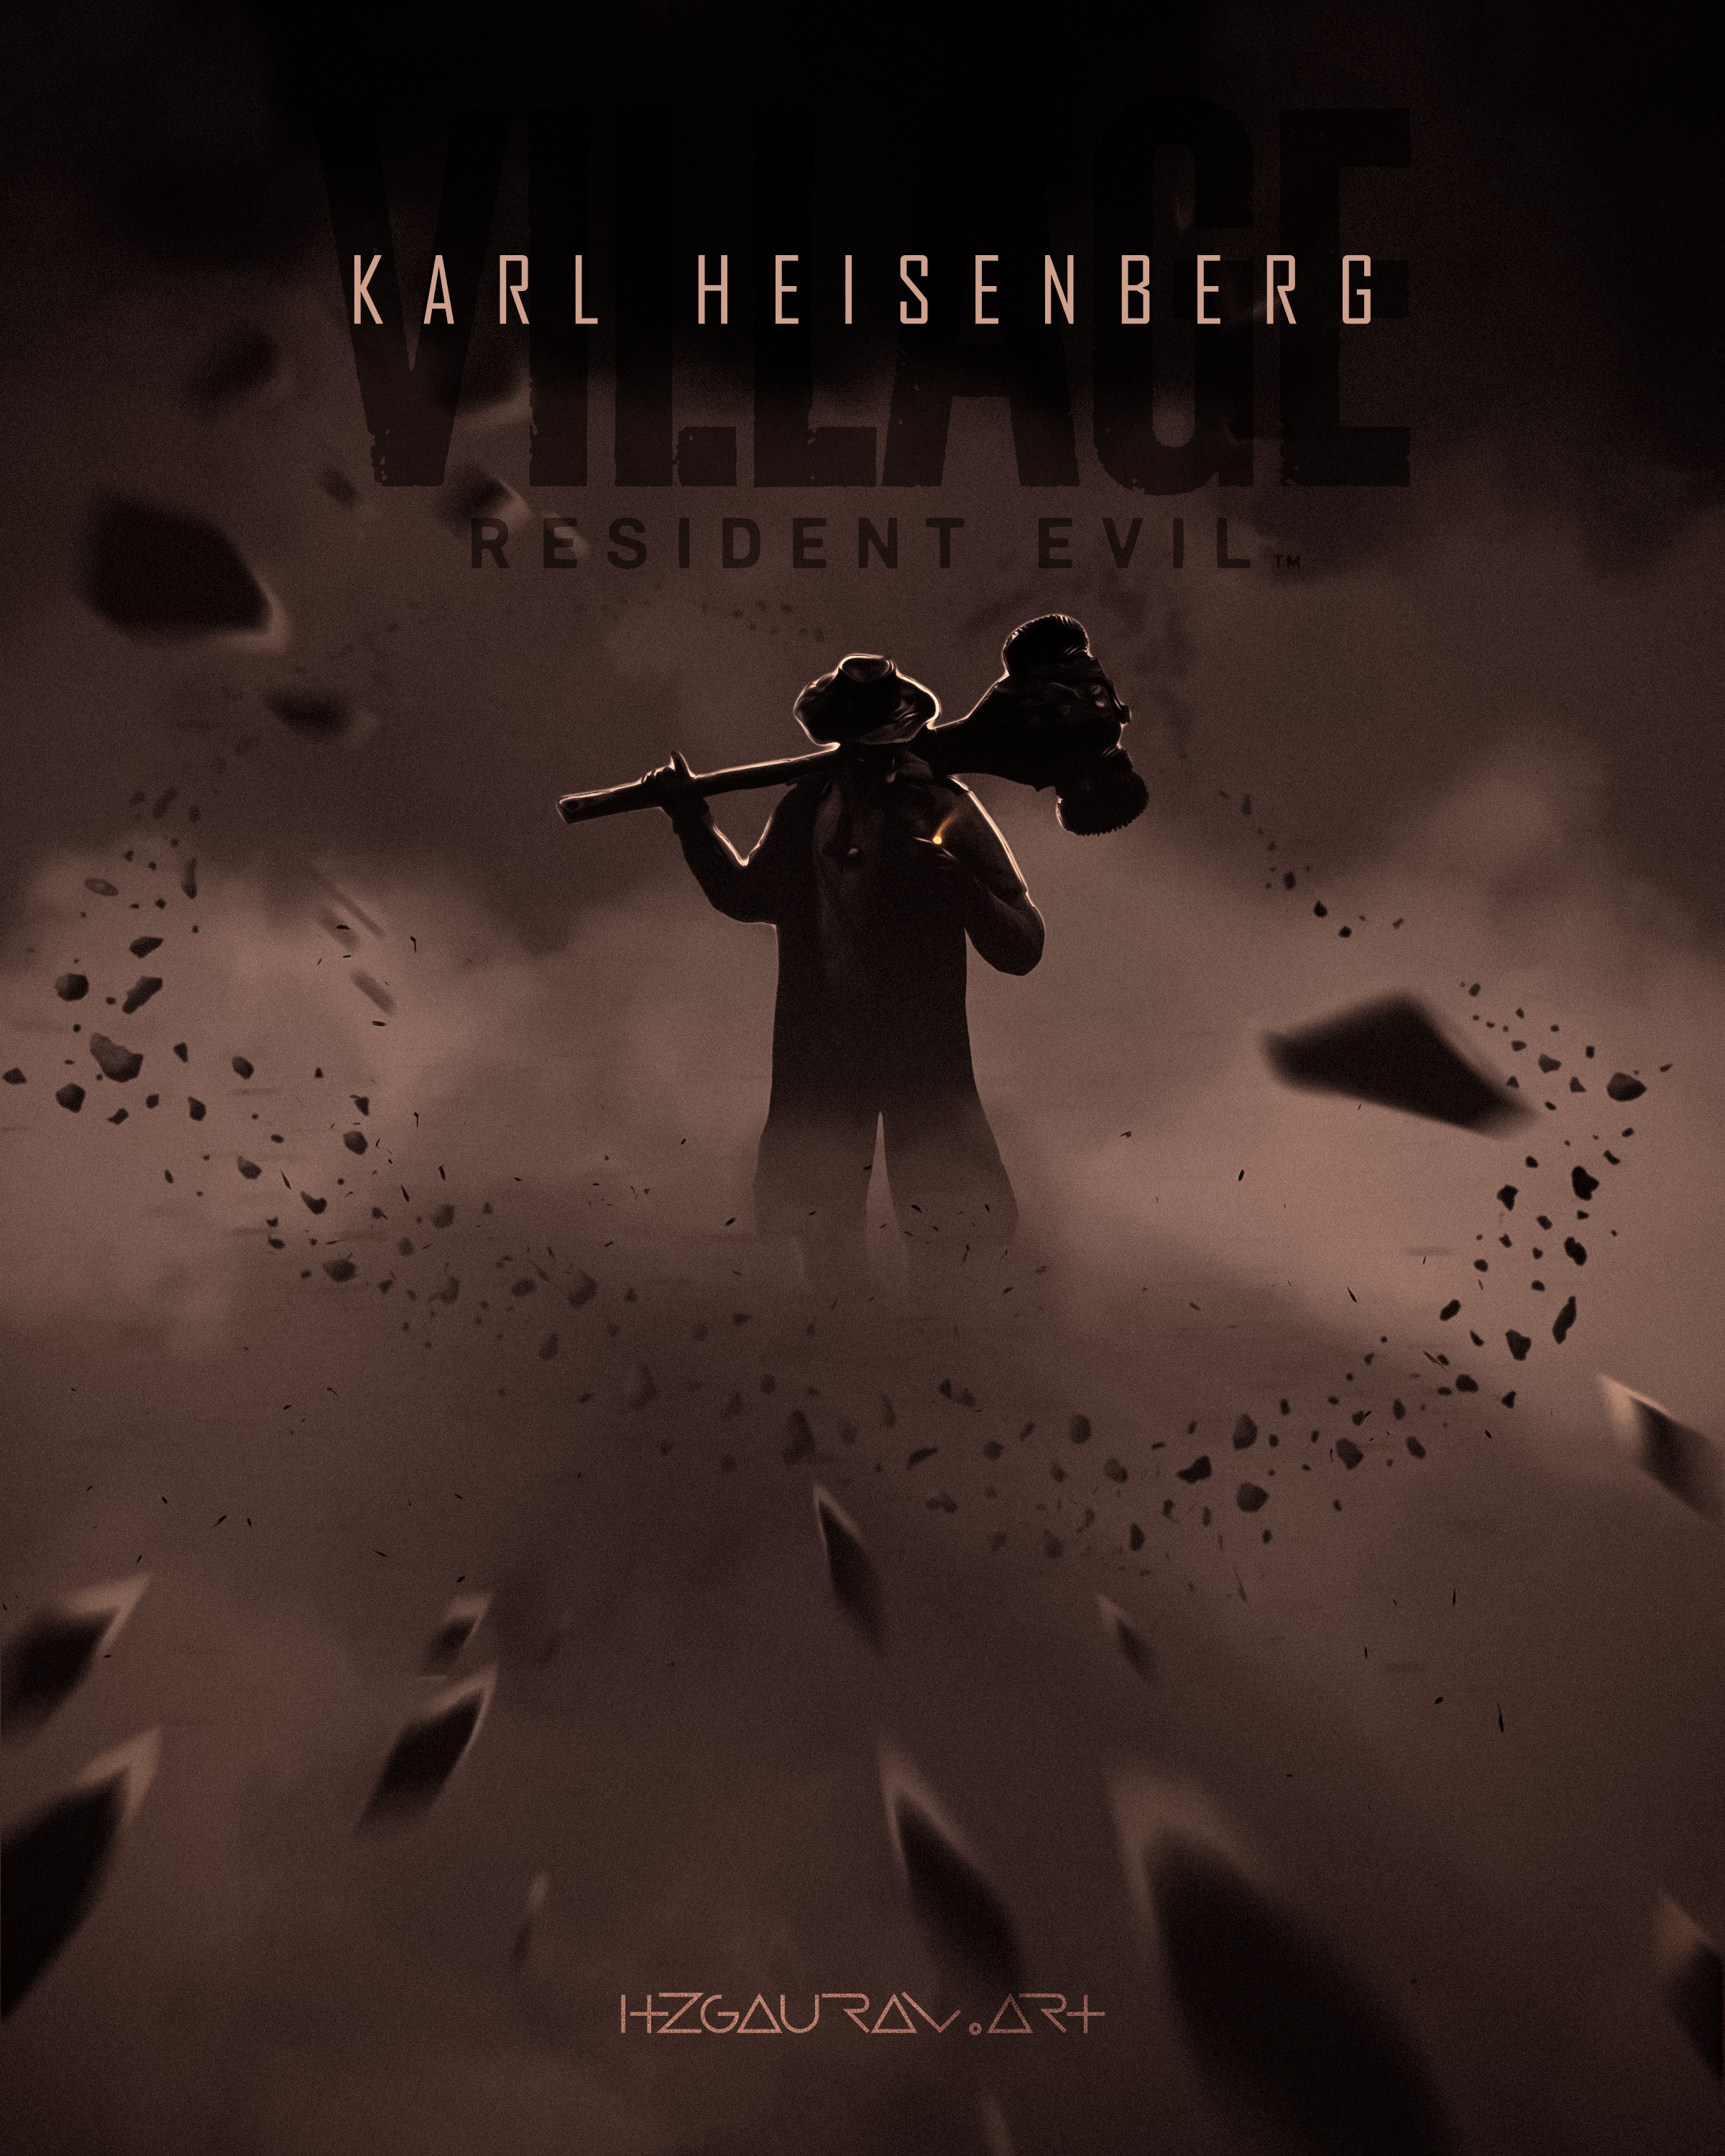 Karl Heisenberg [Artwork] rResidentEvilVillage